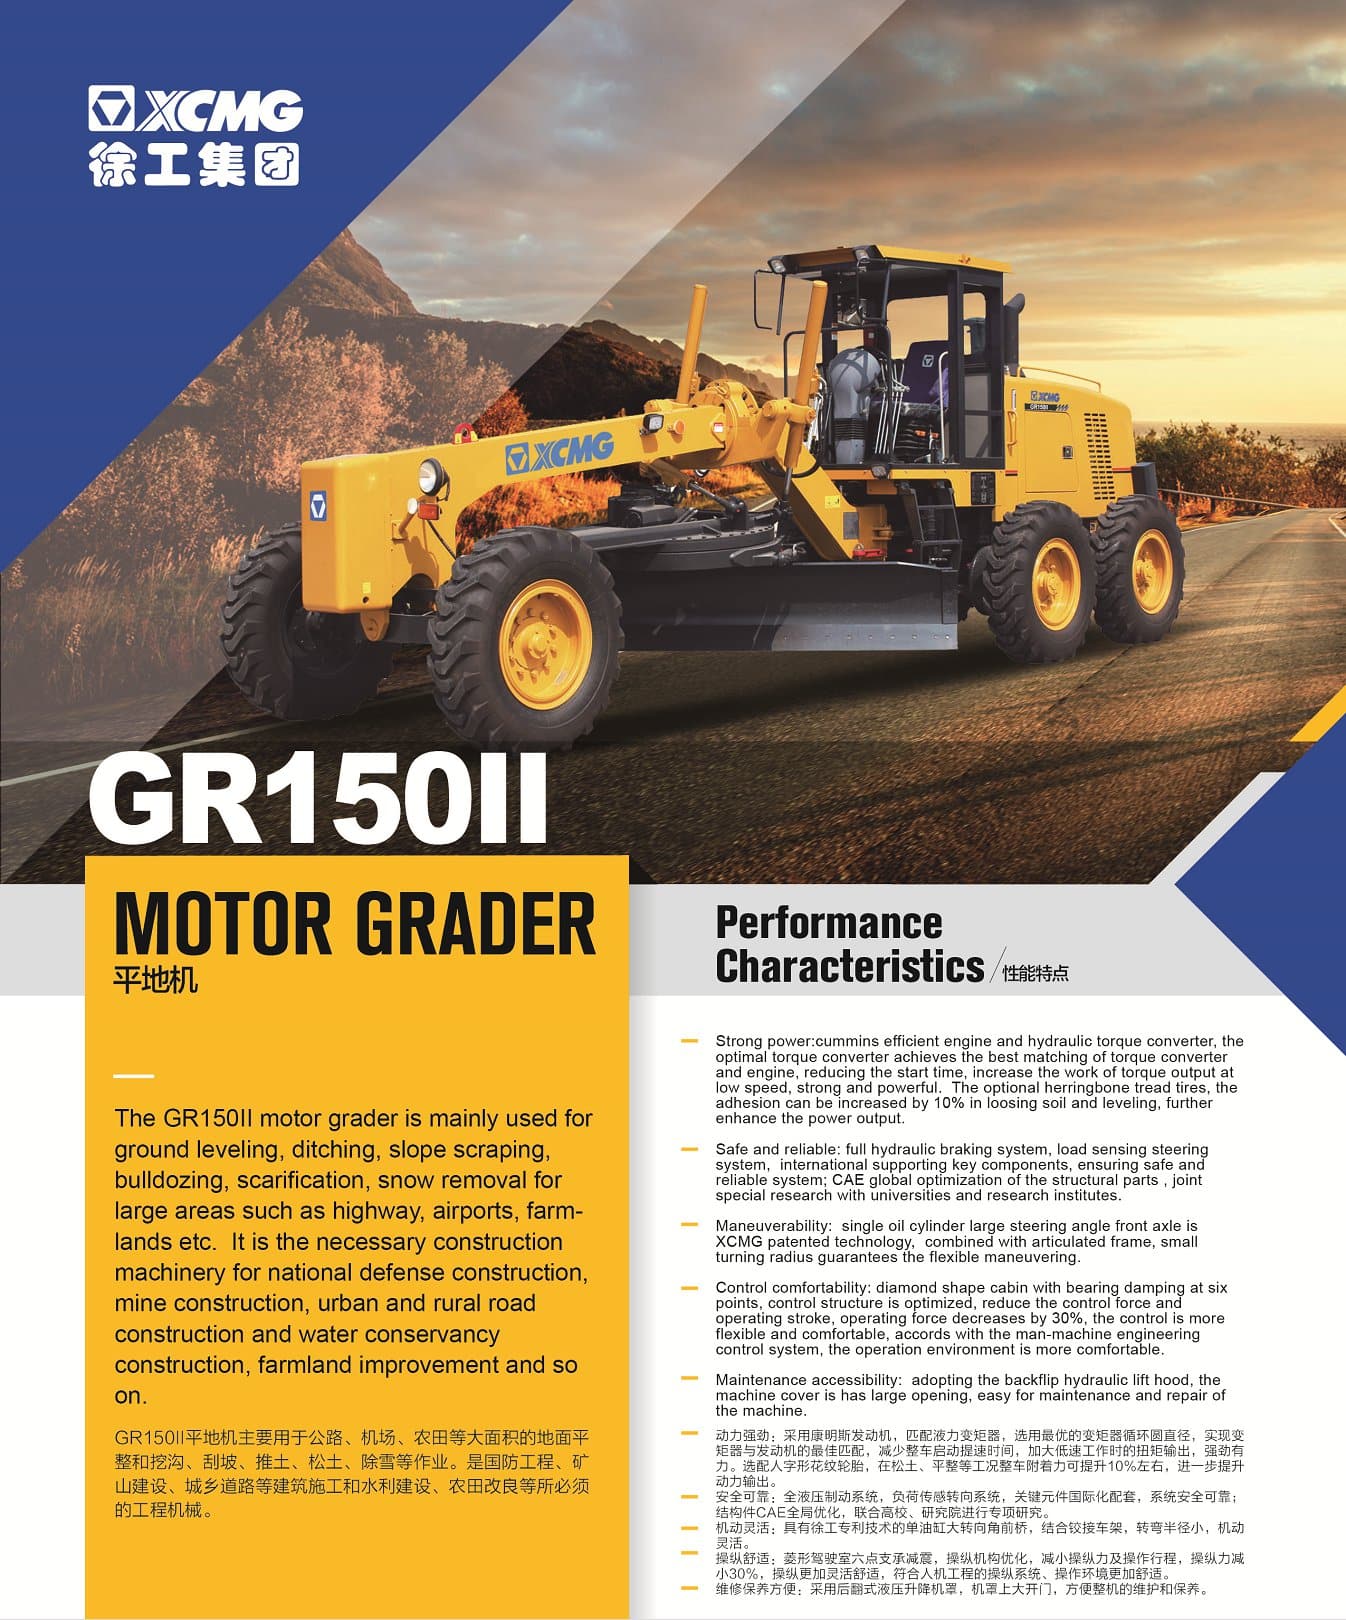 XCMG Official Motor Grader GR150II For Sale